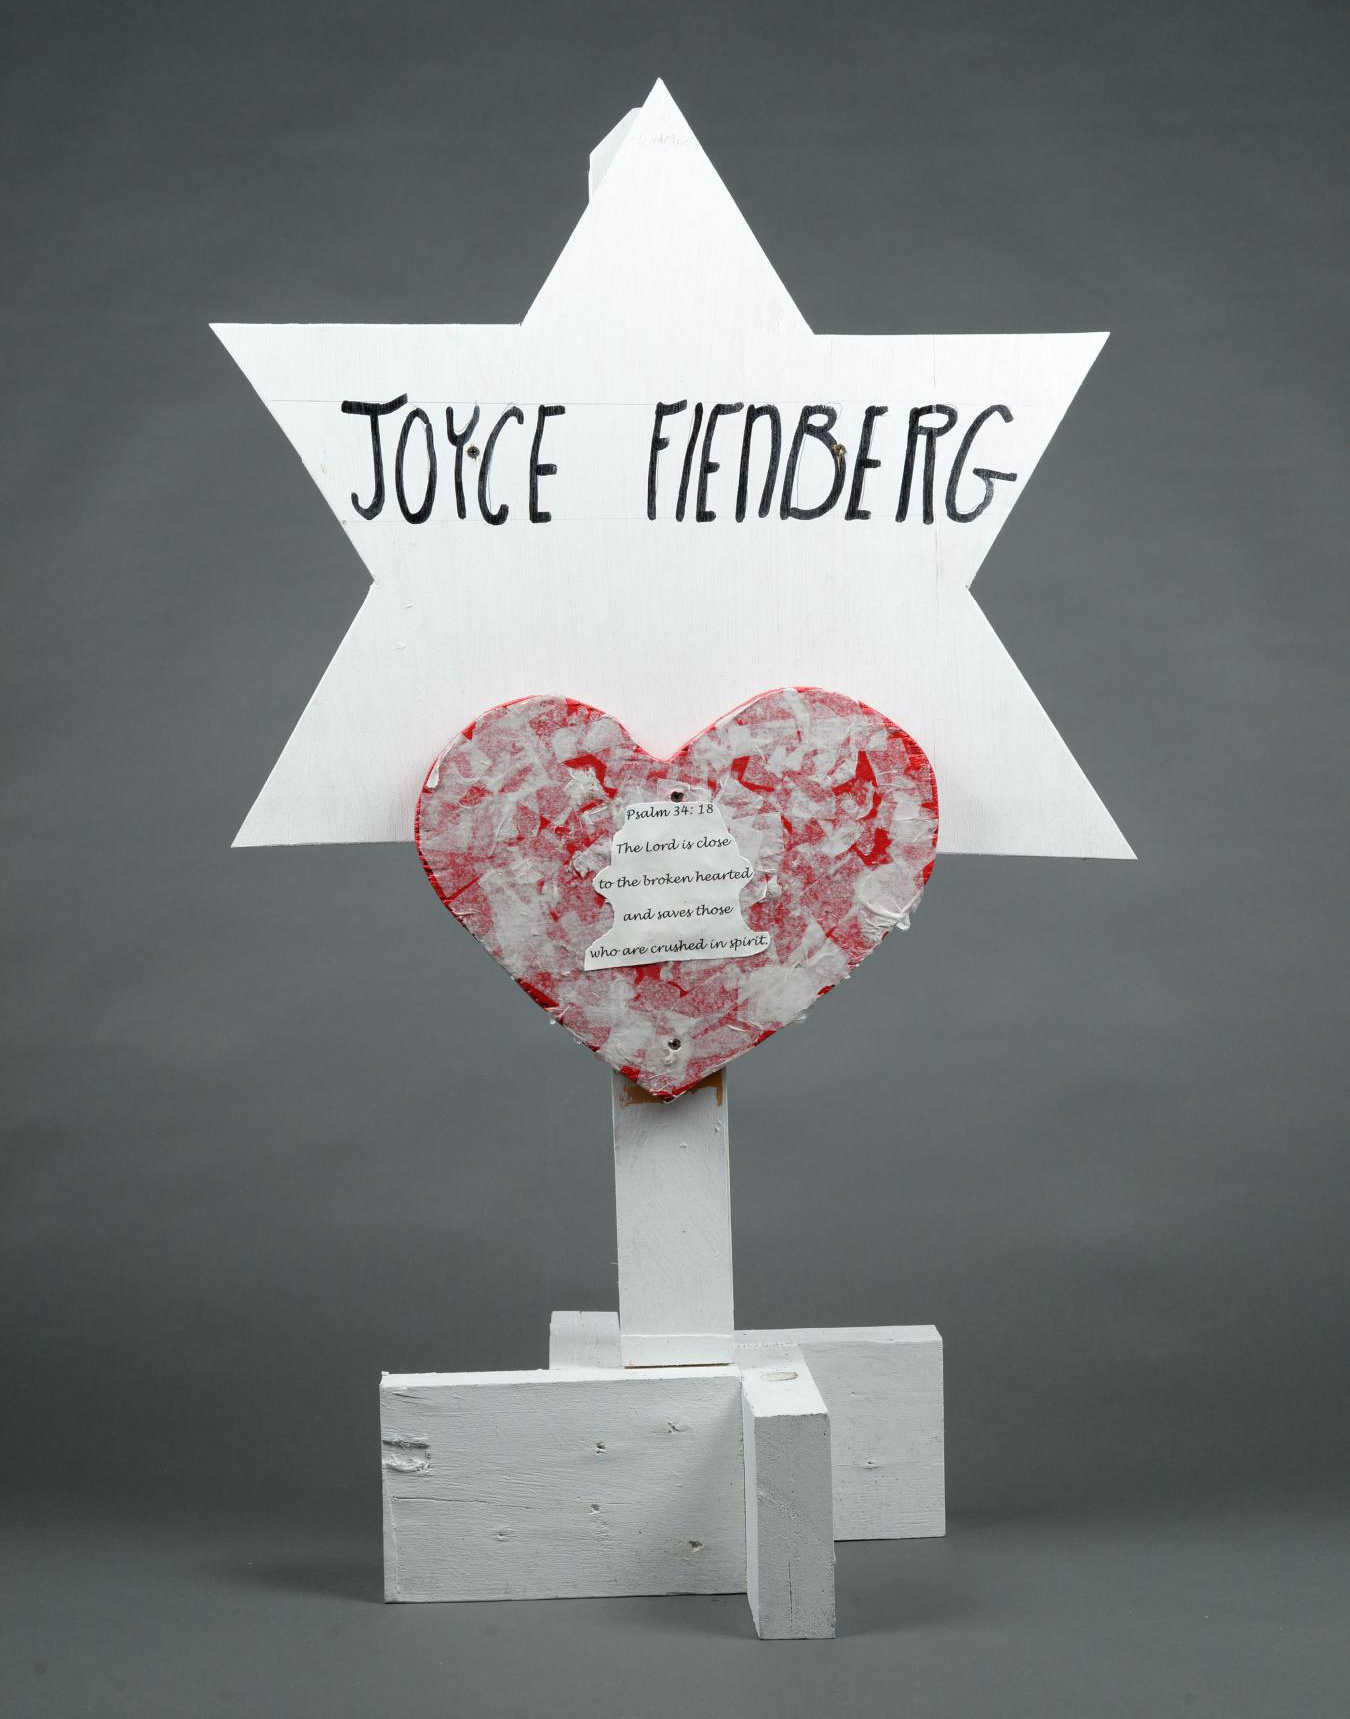 Handmade Star of David with Joyce Fienberg written on it